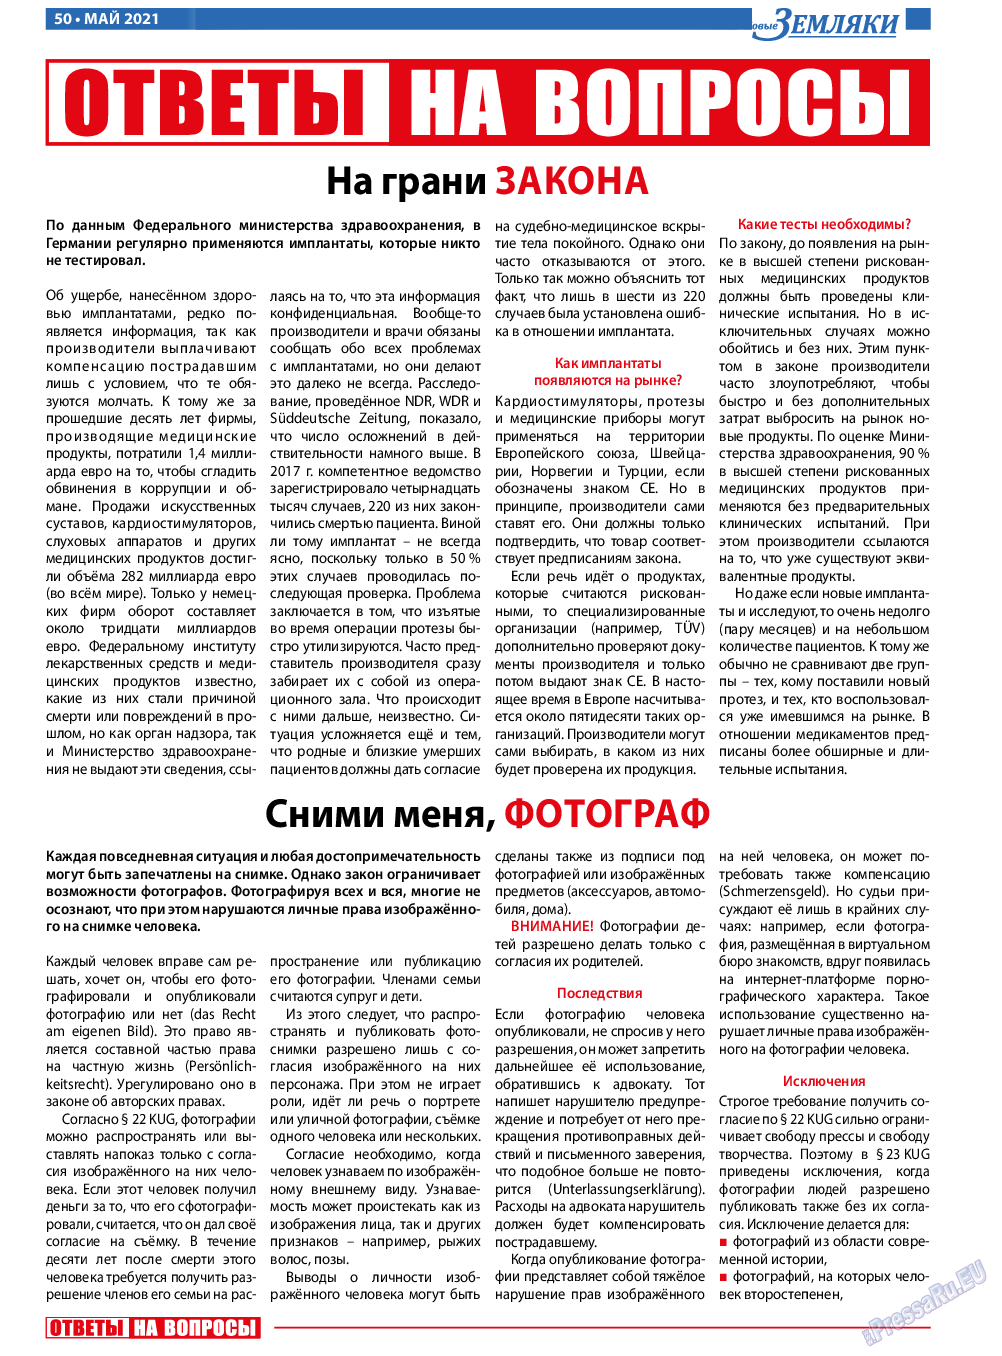 Новые Земляки, газета. 2021 №5 стр.50